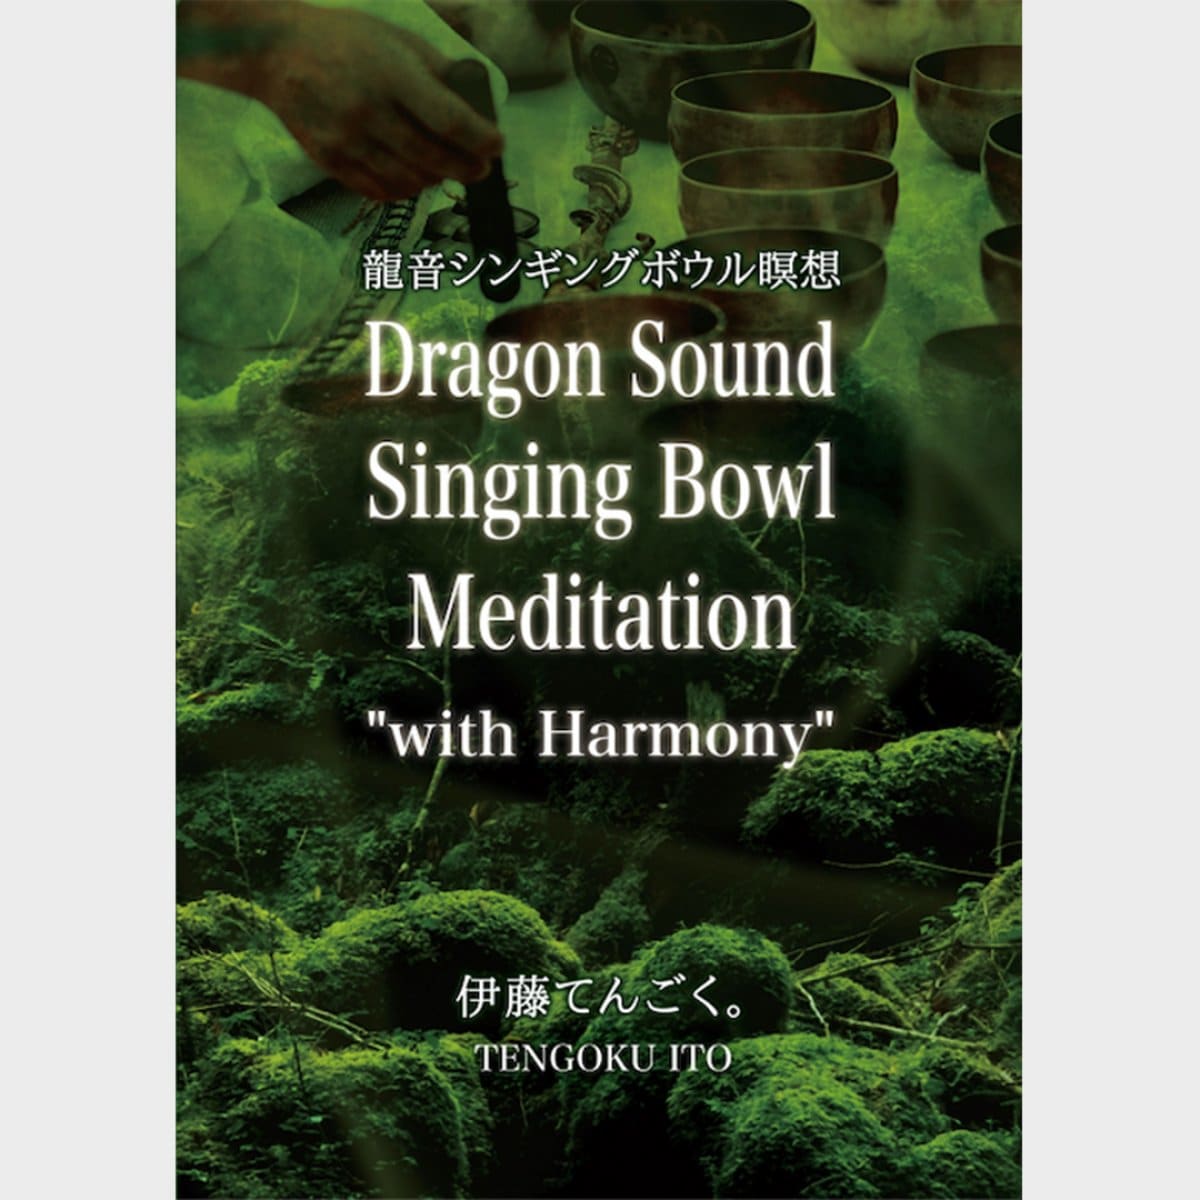 瞑想シリーズCD「龍音シンギングボウル瞑想 "with Harmony"」